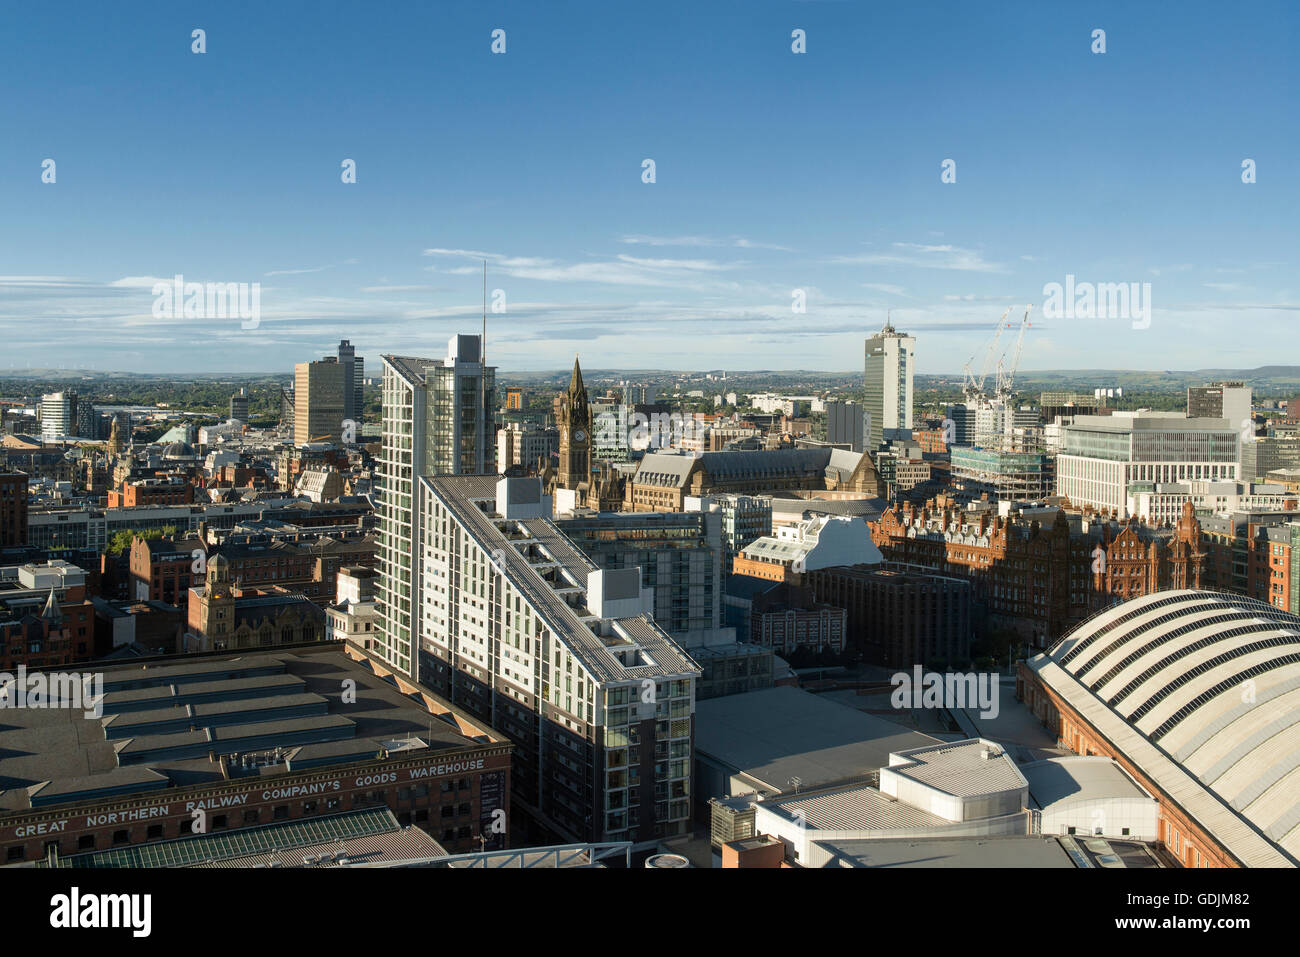 Une photo de la ville de Manchester, UK, avec les toits de divers bâtiments et gratte-ciel. Banque D'Images